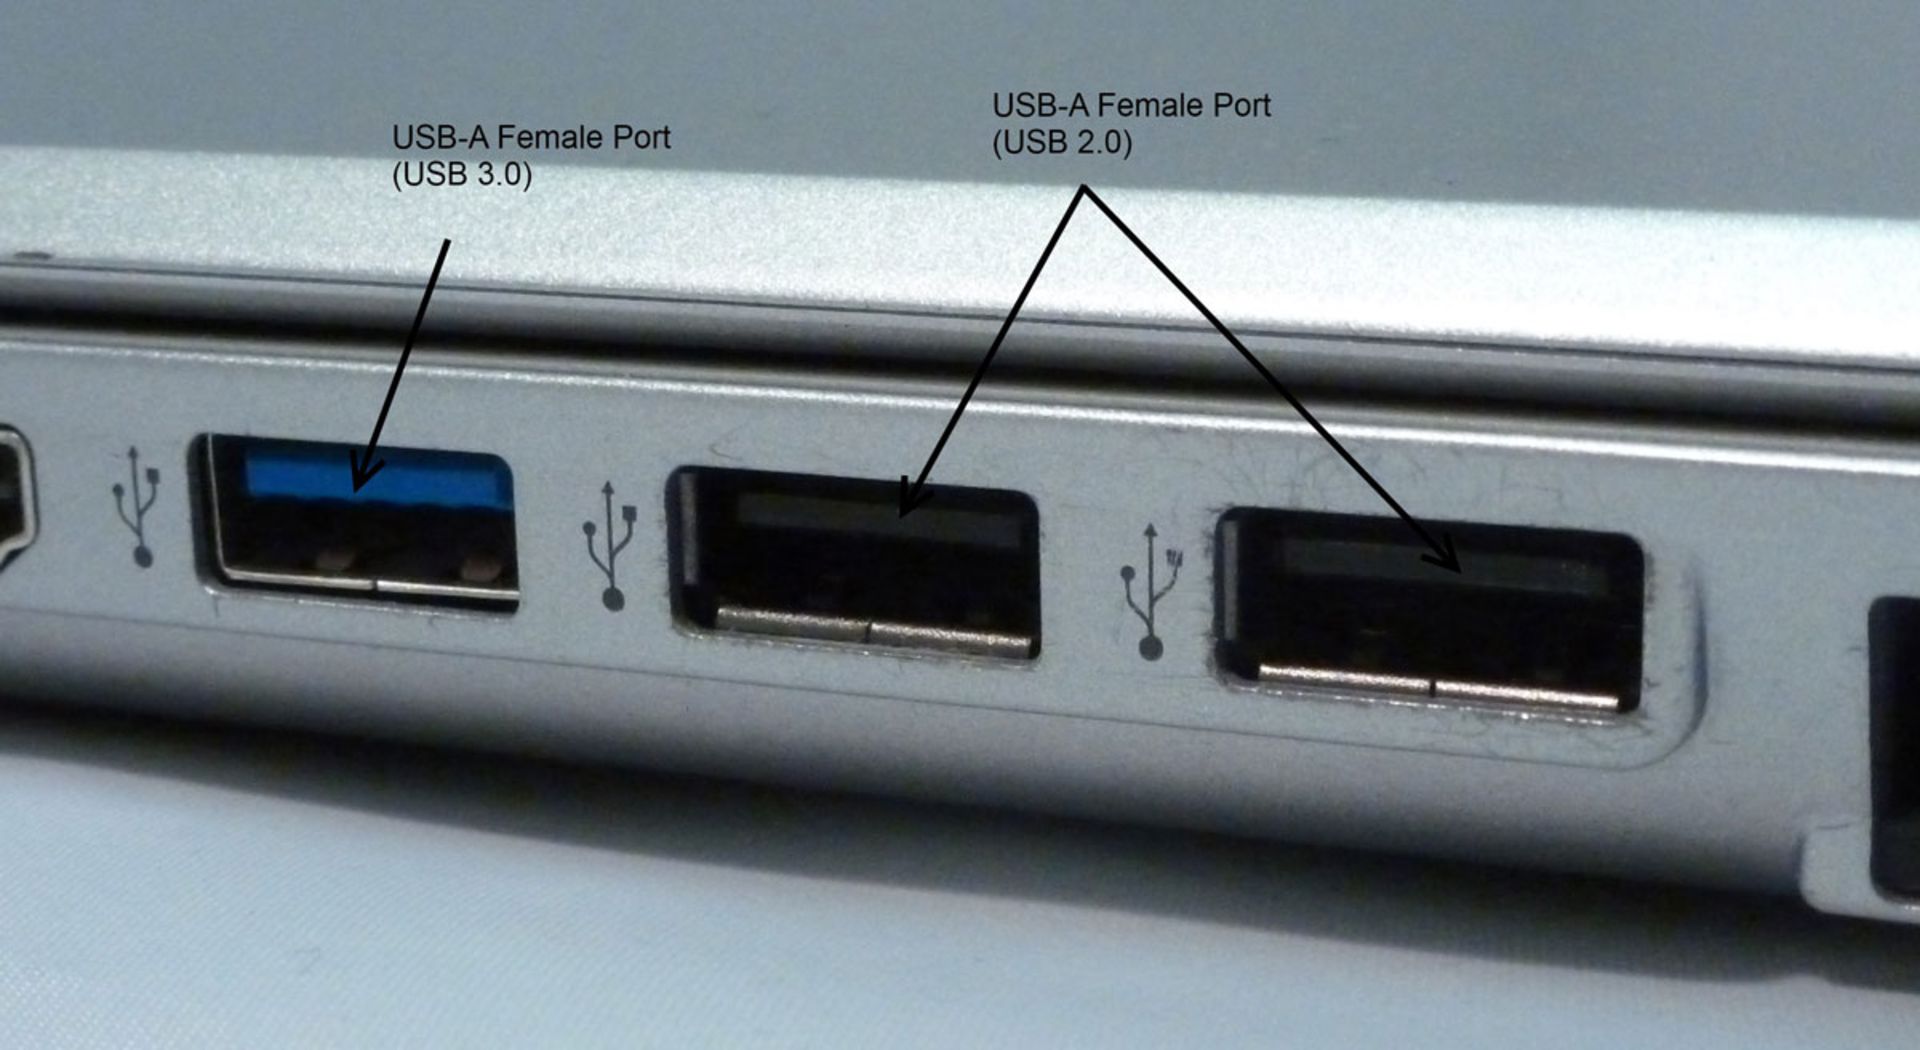 مرجع متخصصين ايران نماي نزديك پورت هاي USB 2.0 در مقابل USB 3.0